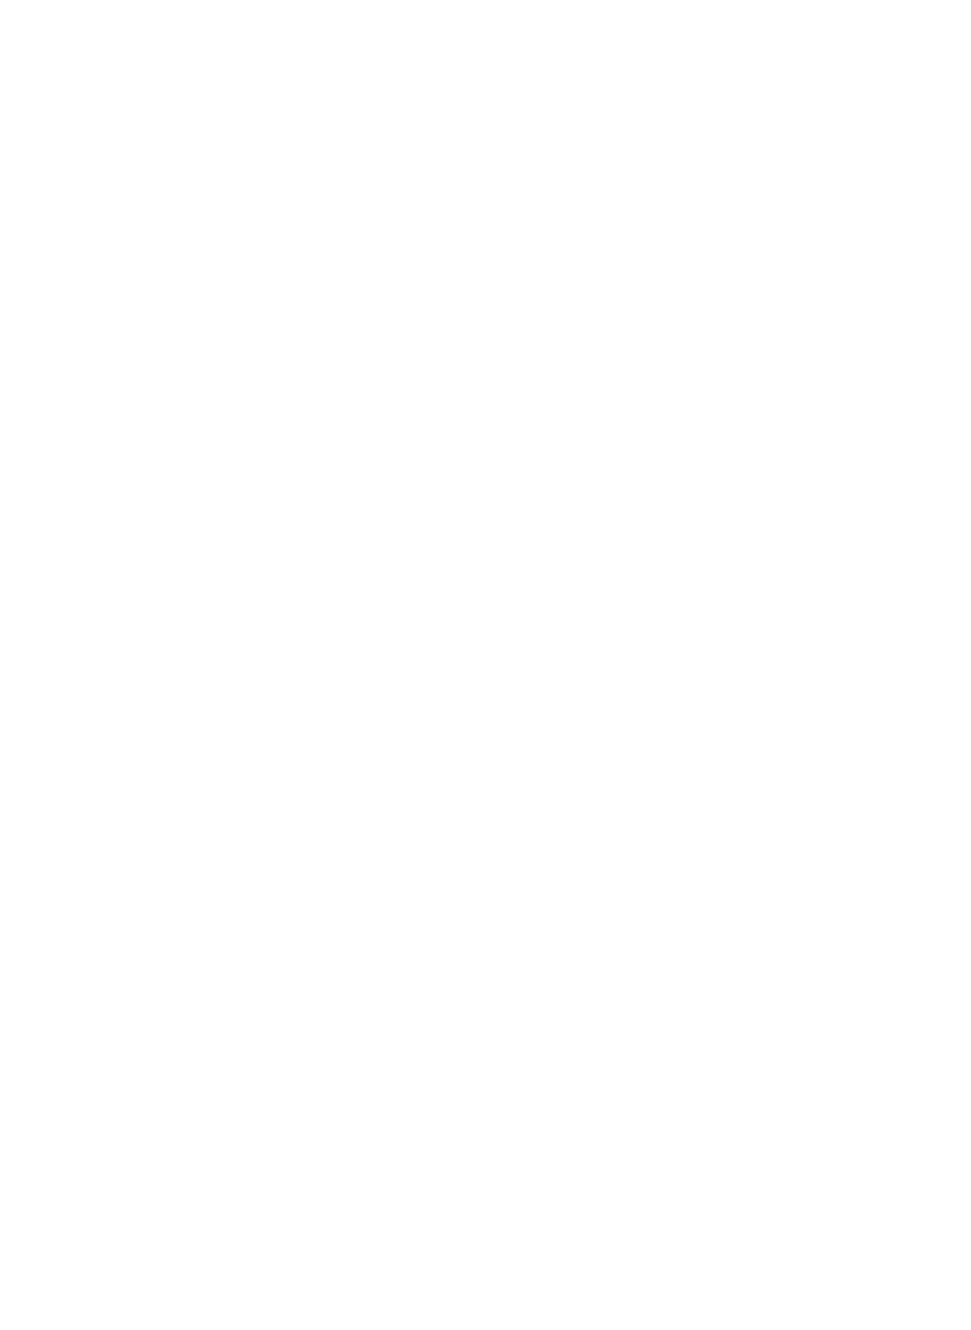 世界一のお酒辞典 L engine